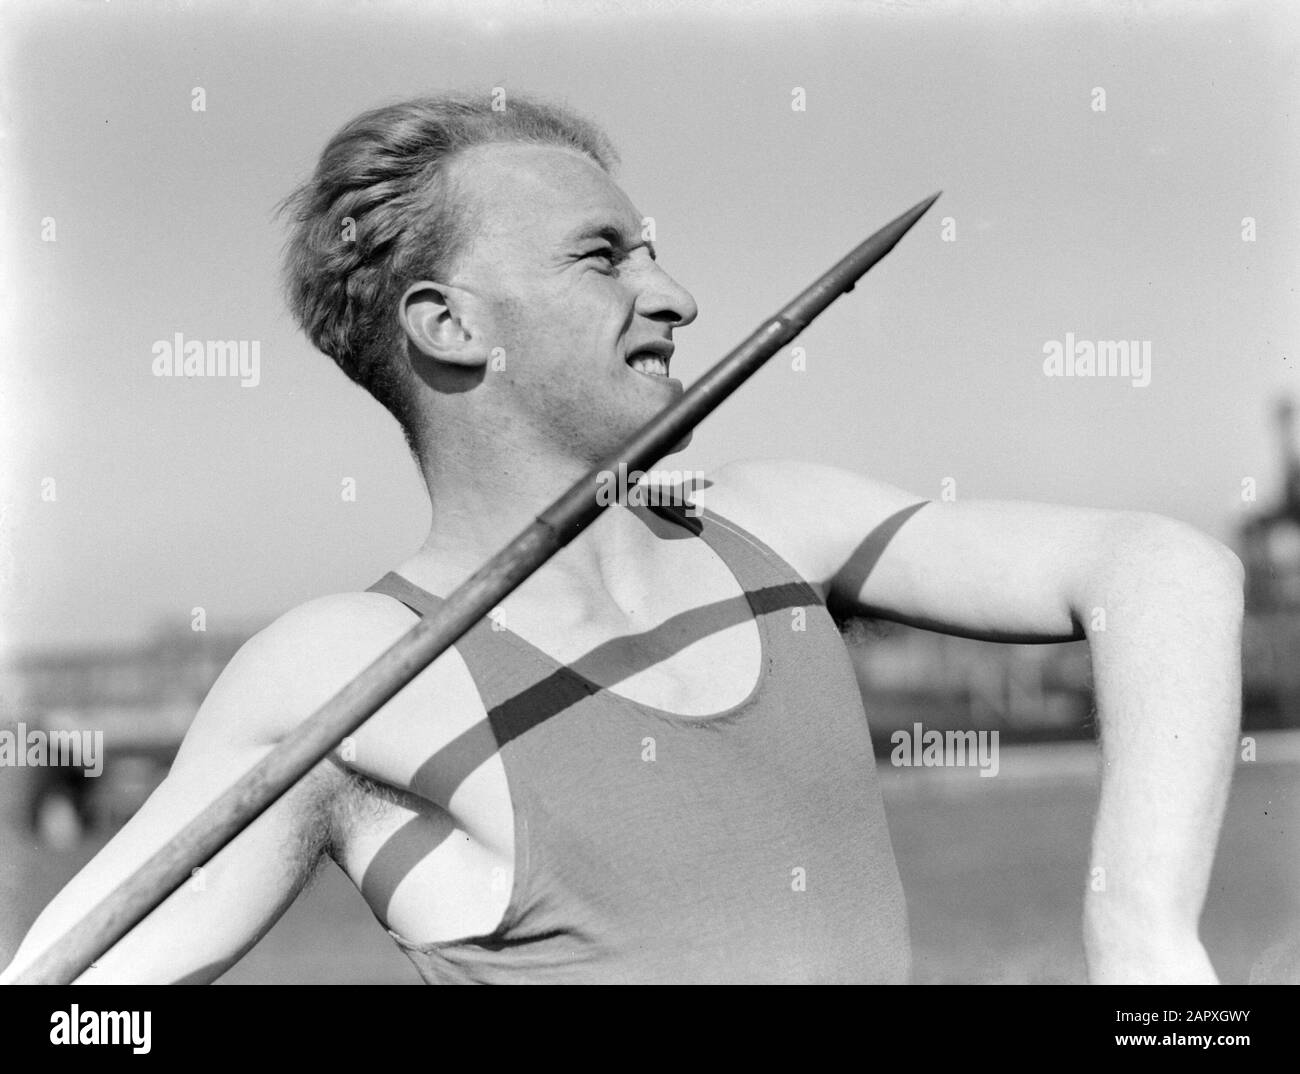 Reportage Sportler Speer Thrower Datum: 1933 Schlagwörter: Leichtathletik, Details, Männer, Speere Würfe Stockfoto